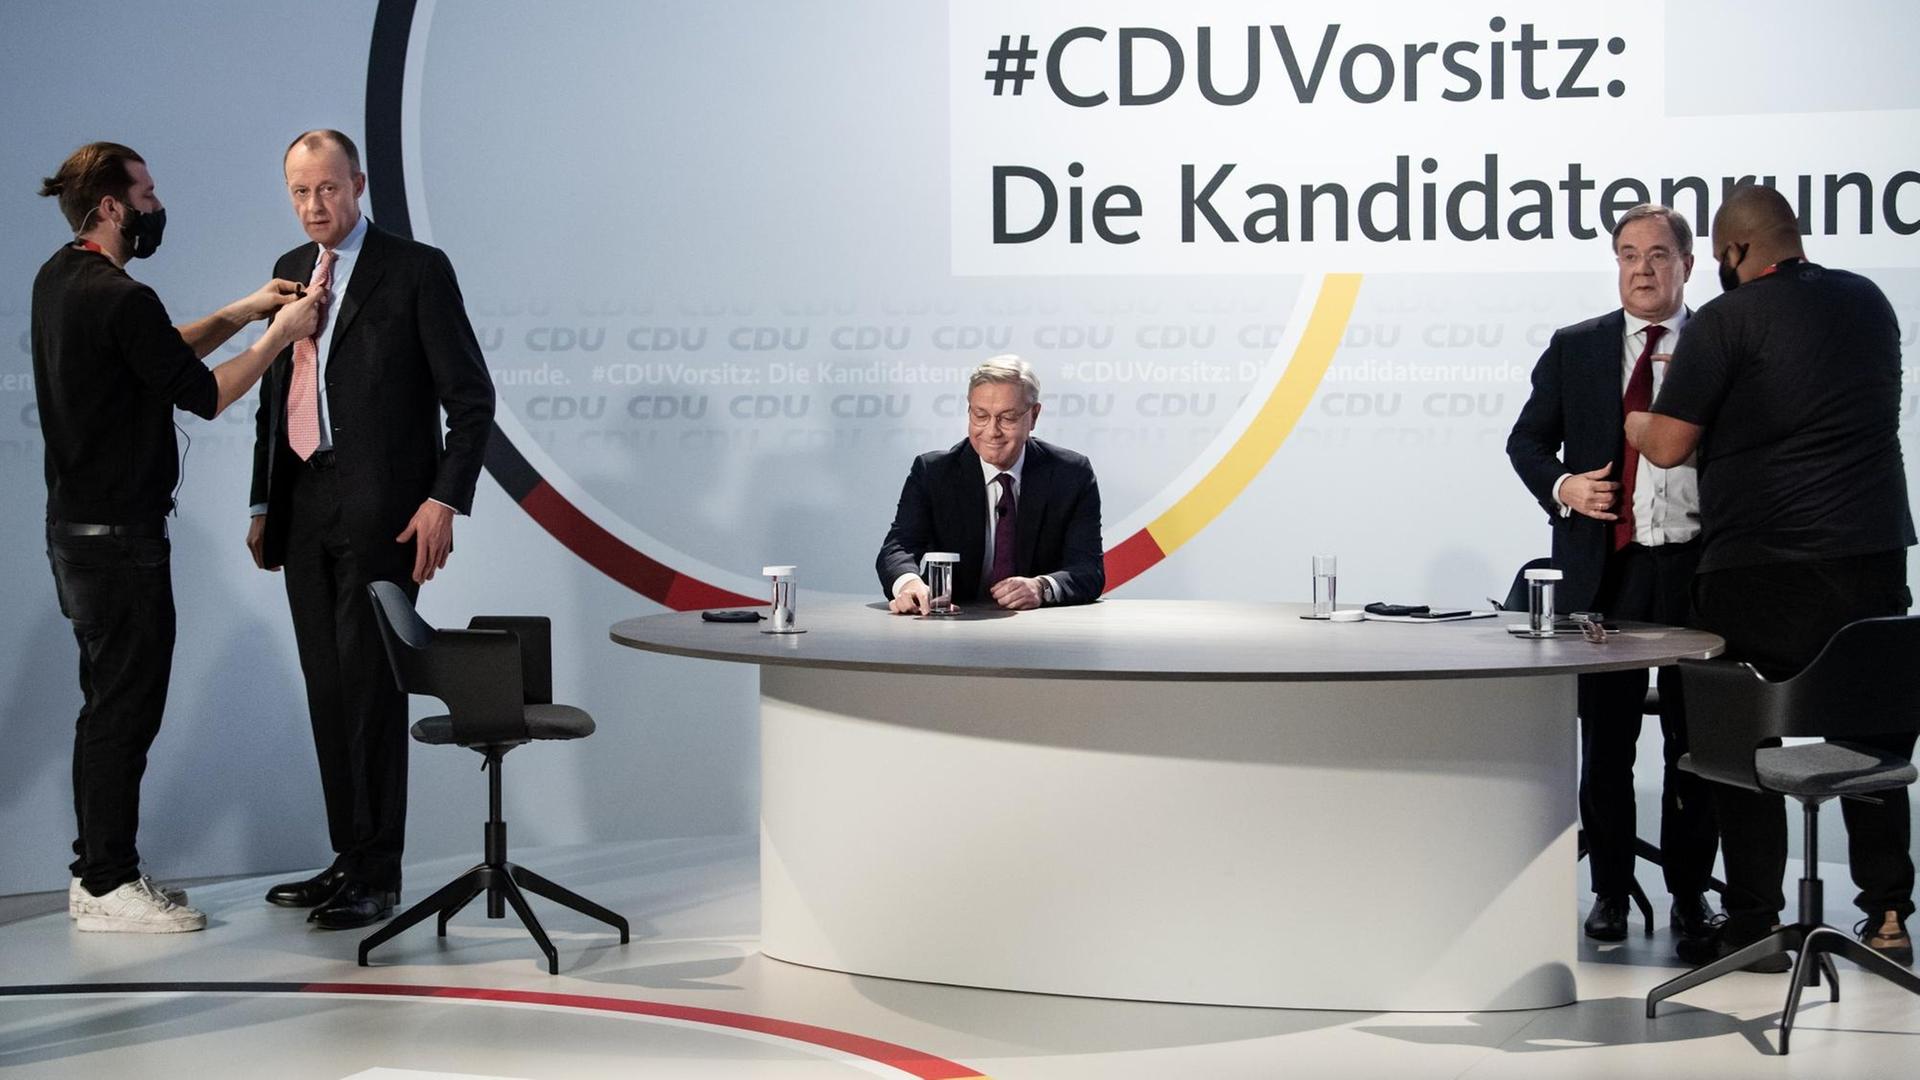 Die drei Kandidaten für den Vorsitz der CDU Deutschlands, Friedrich Merz (l-r), Norbert Röttgen und Armin Laschet, werden für ein Online-Video-Talkformat, in dem live aus dem Konrad-Adenauer-Haus Fragen der CDU-Mitglieder beantwortet werden, vorbereitet